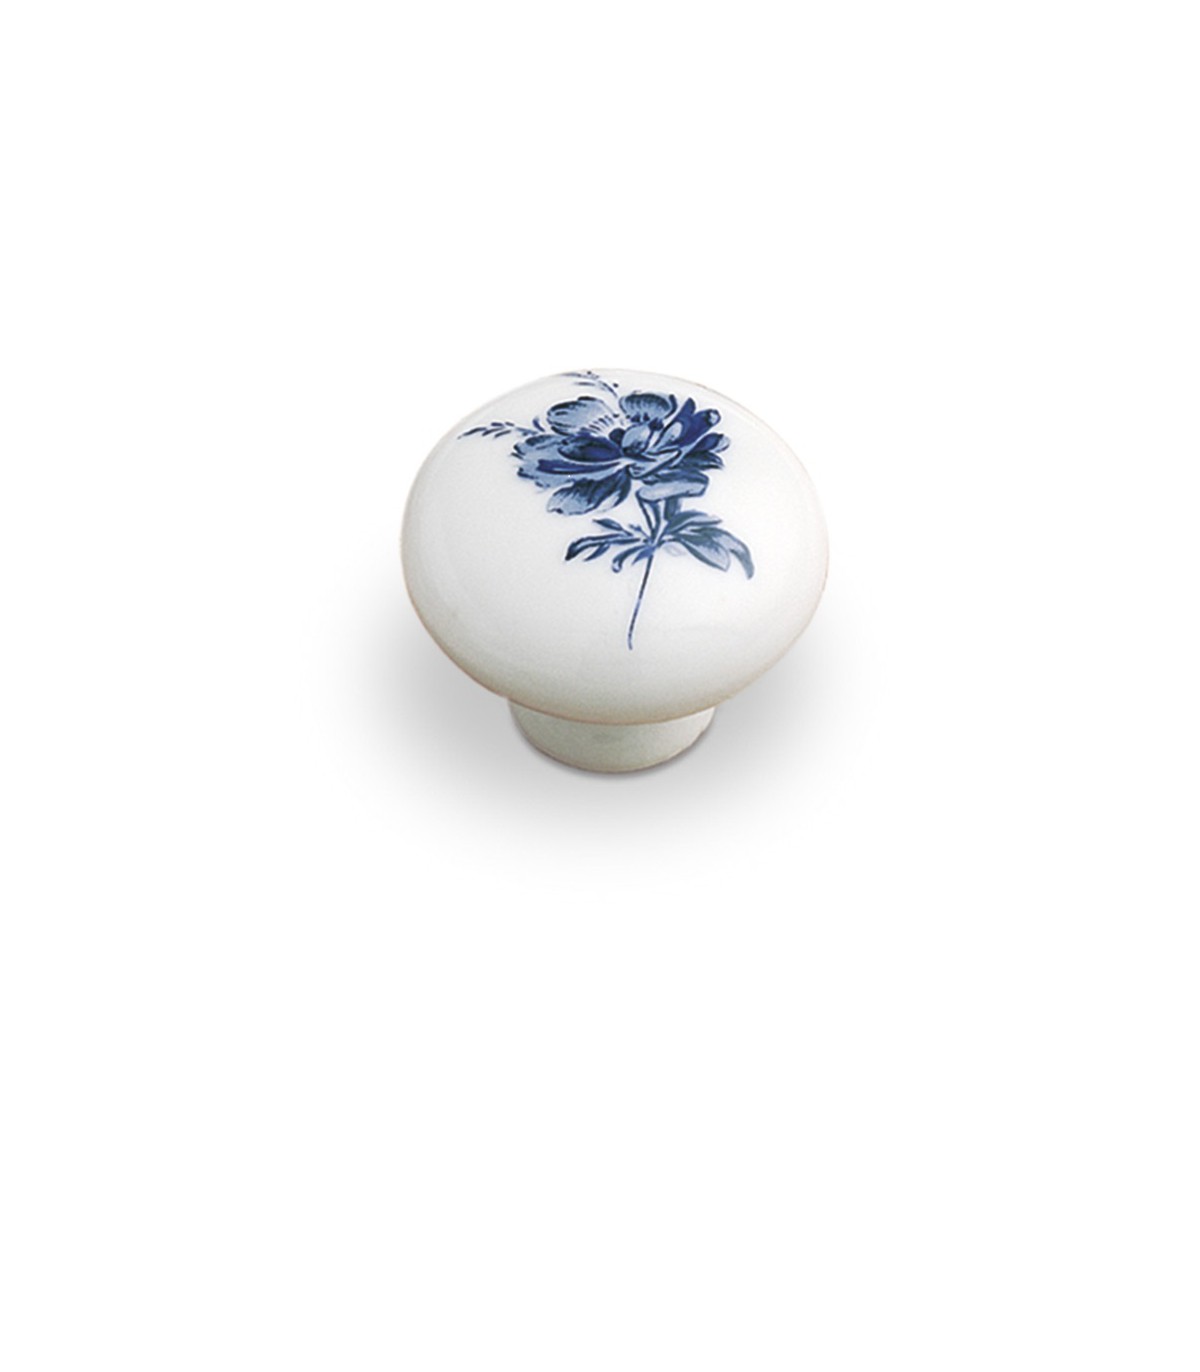 GM1 6778 2 Boutons de meuble poignée en porcelaine tiroir fleur bleu Ø 3.8 cm